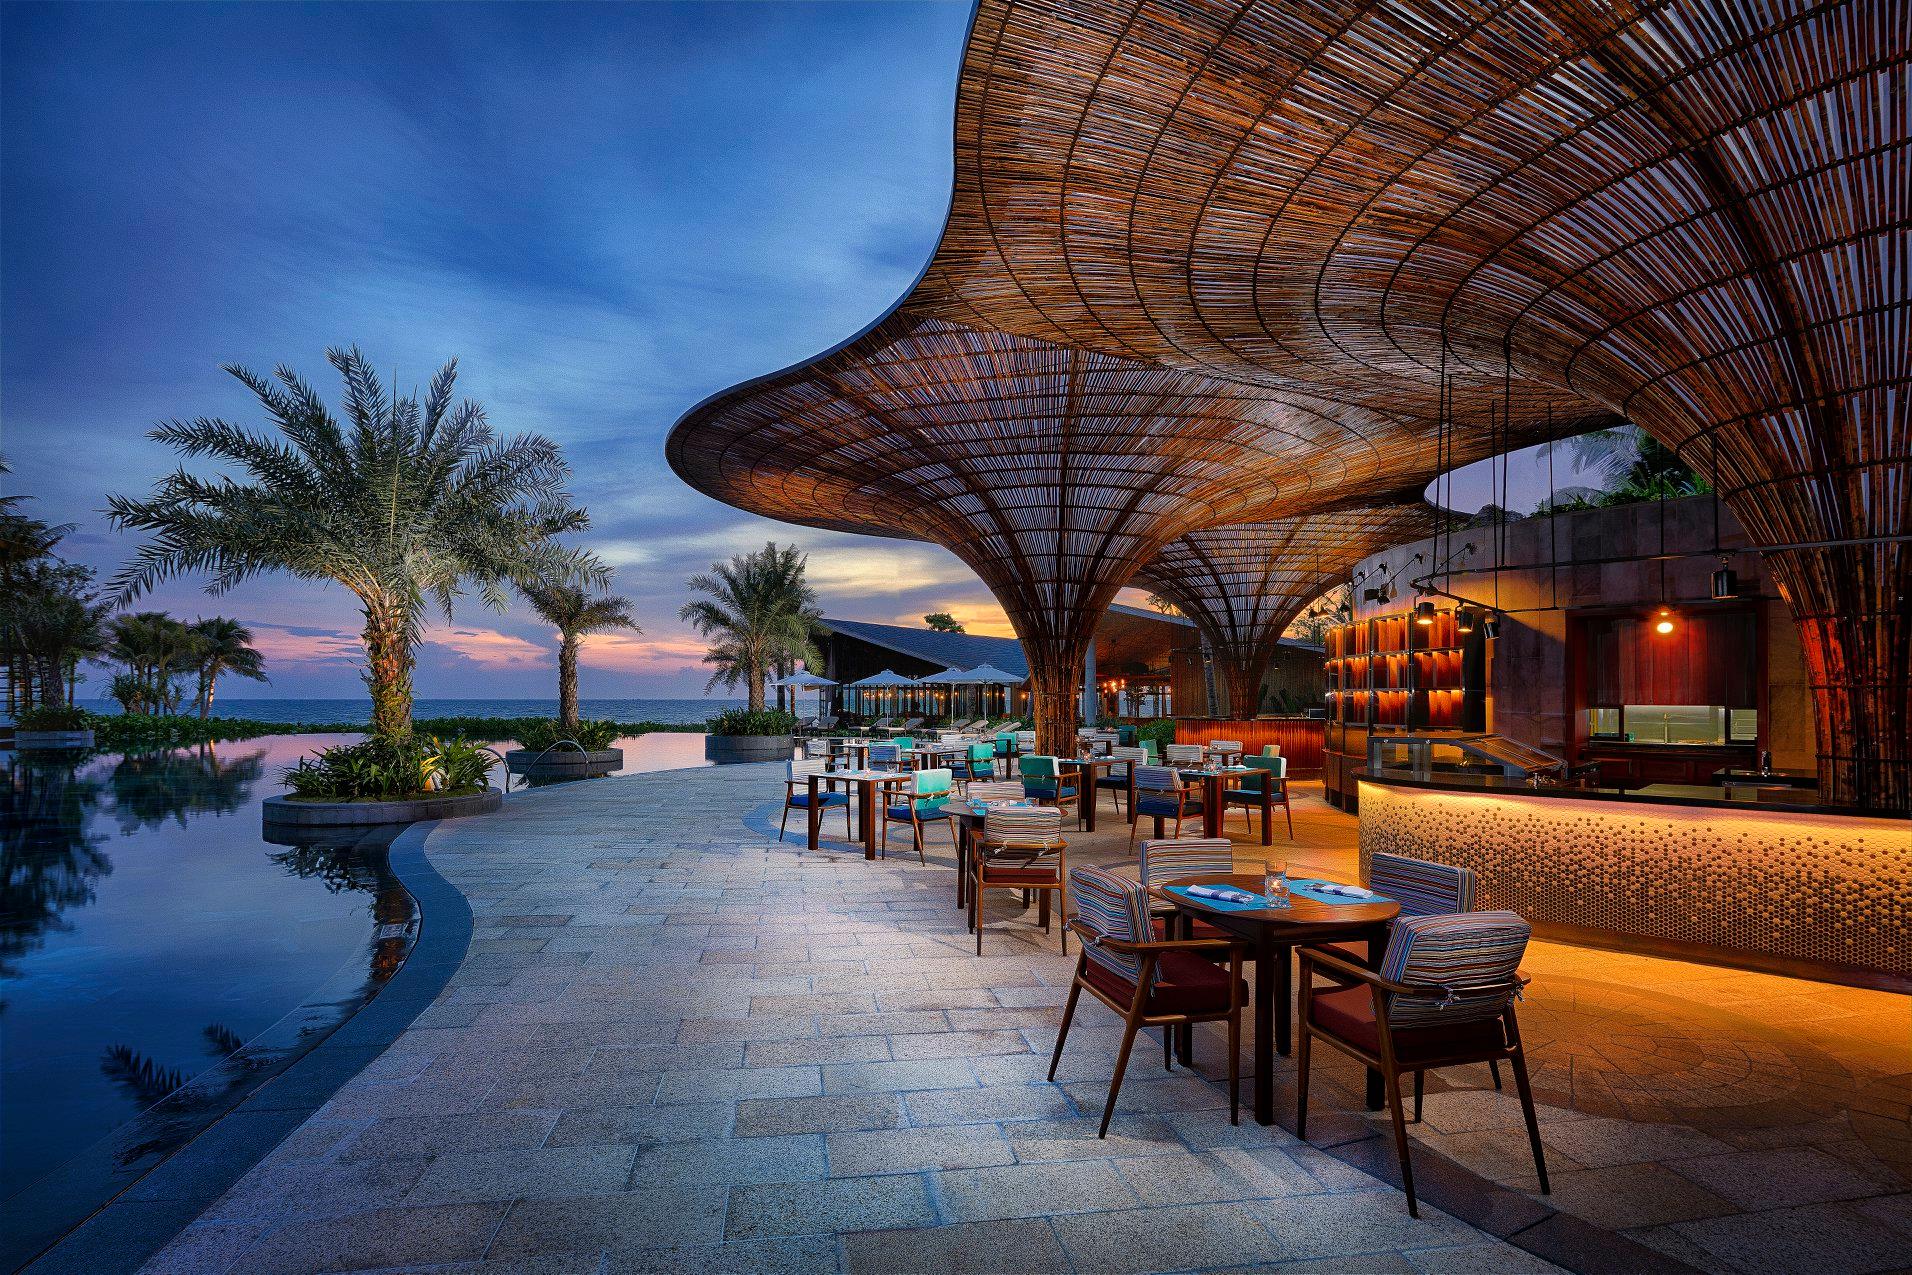 Hàng chục resorts Việt Nam vinh dự nhận Giải thưởng Du lịch Thế giới khu vực Châu Á – Thái Bình Dương, trong đó nhiều Resorts nhận hai đến ba giải cùng lúc. Giải được tổ chức hàng năm bởi World Travel Awards.